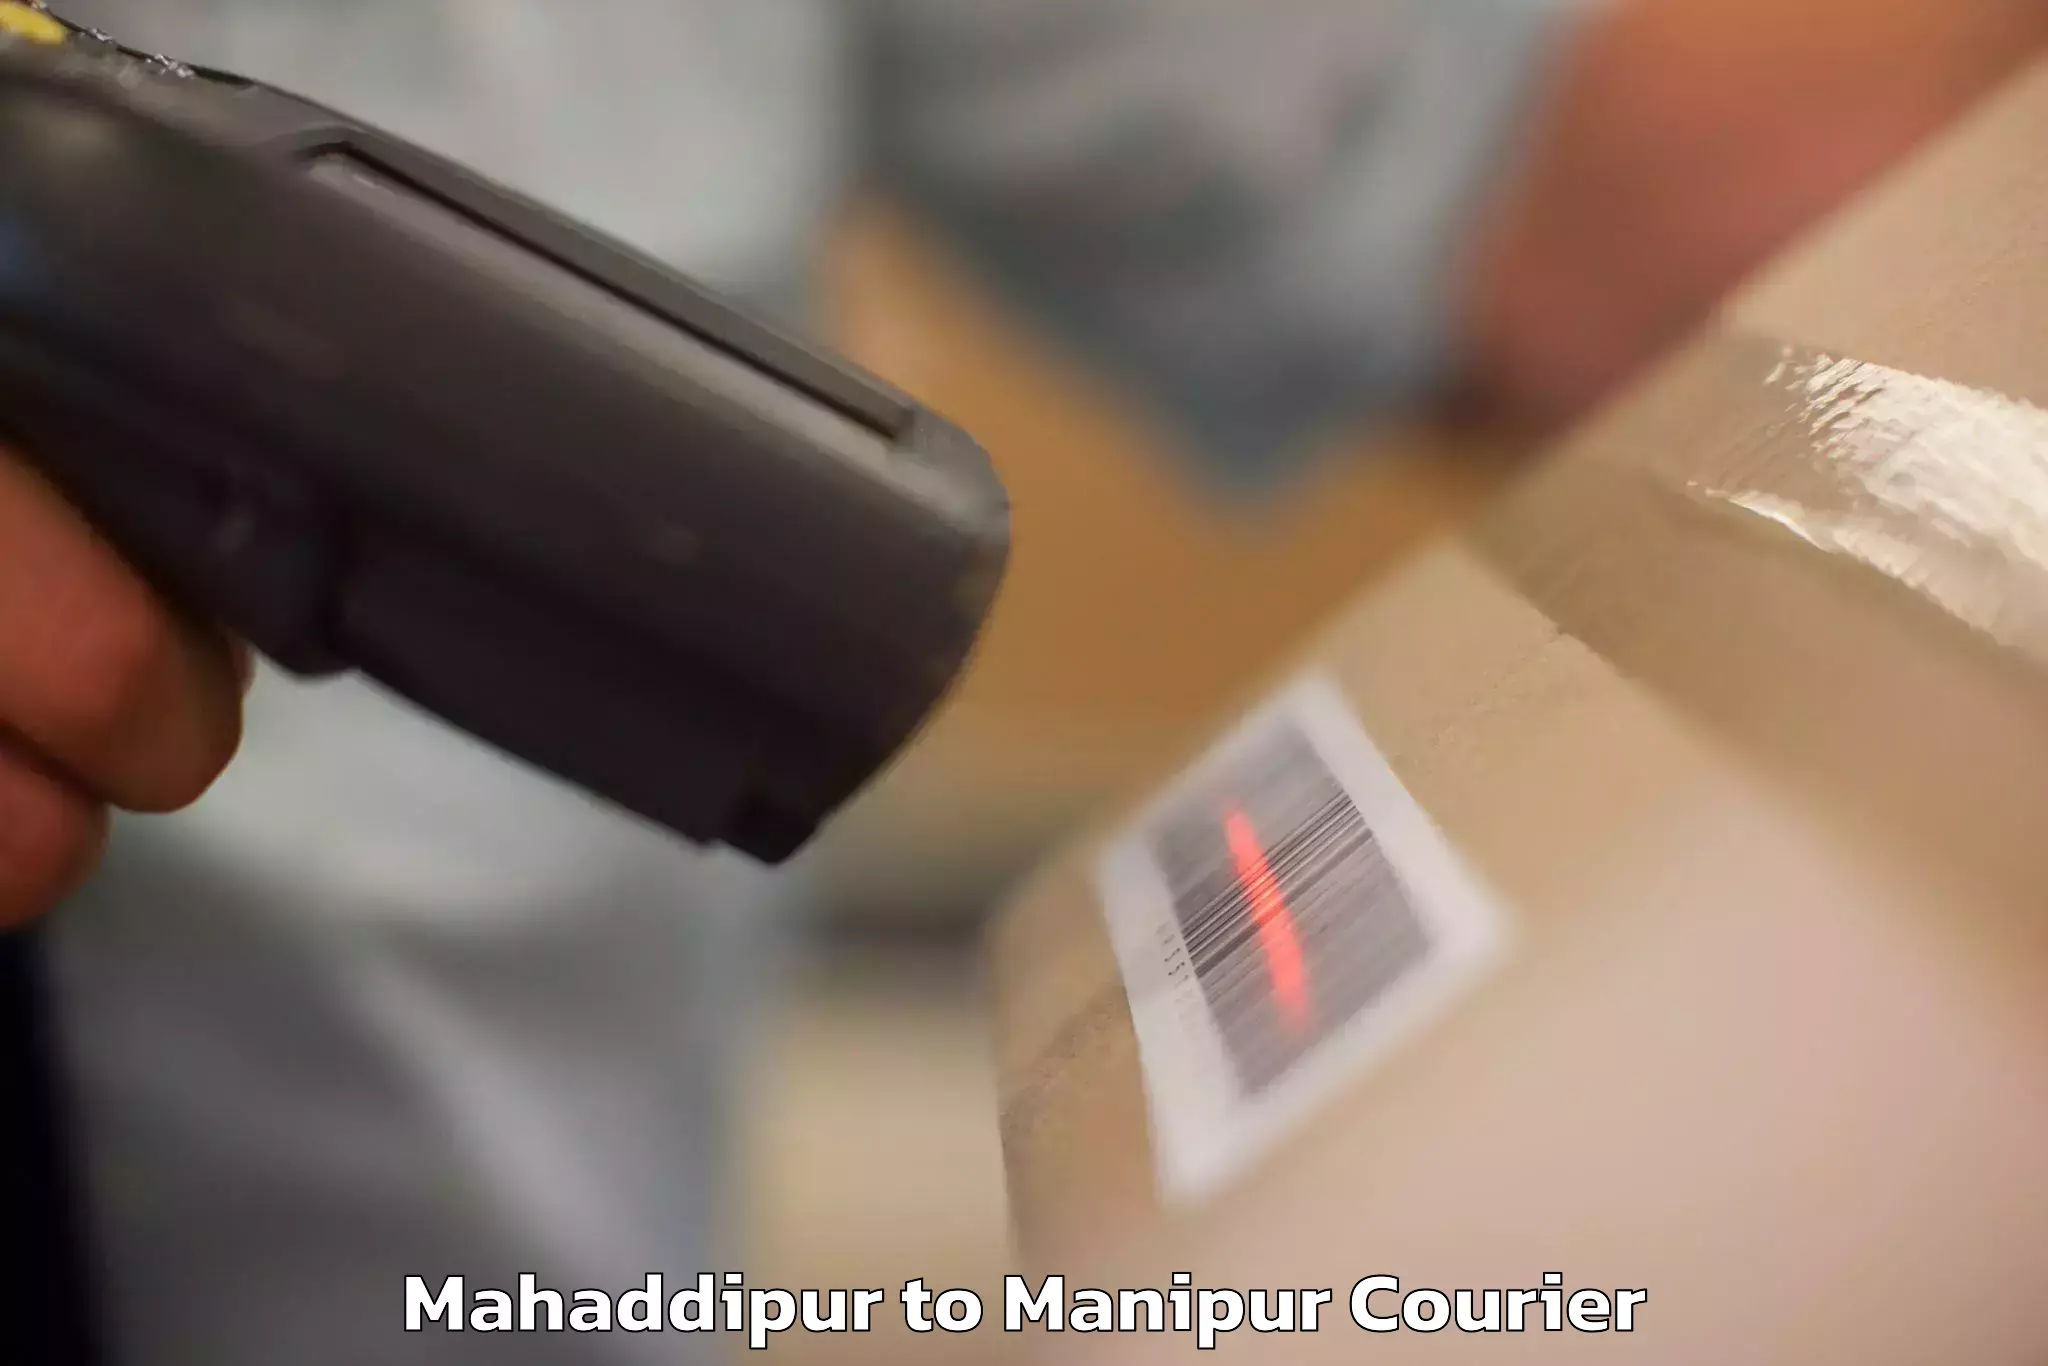 Luggage delivery optimization Mahaddipur to Ukhrul